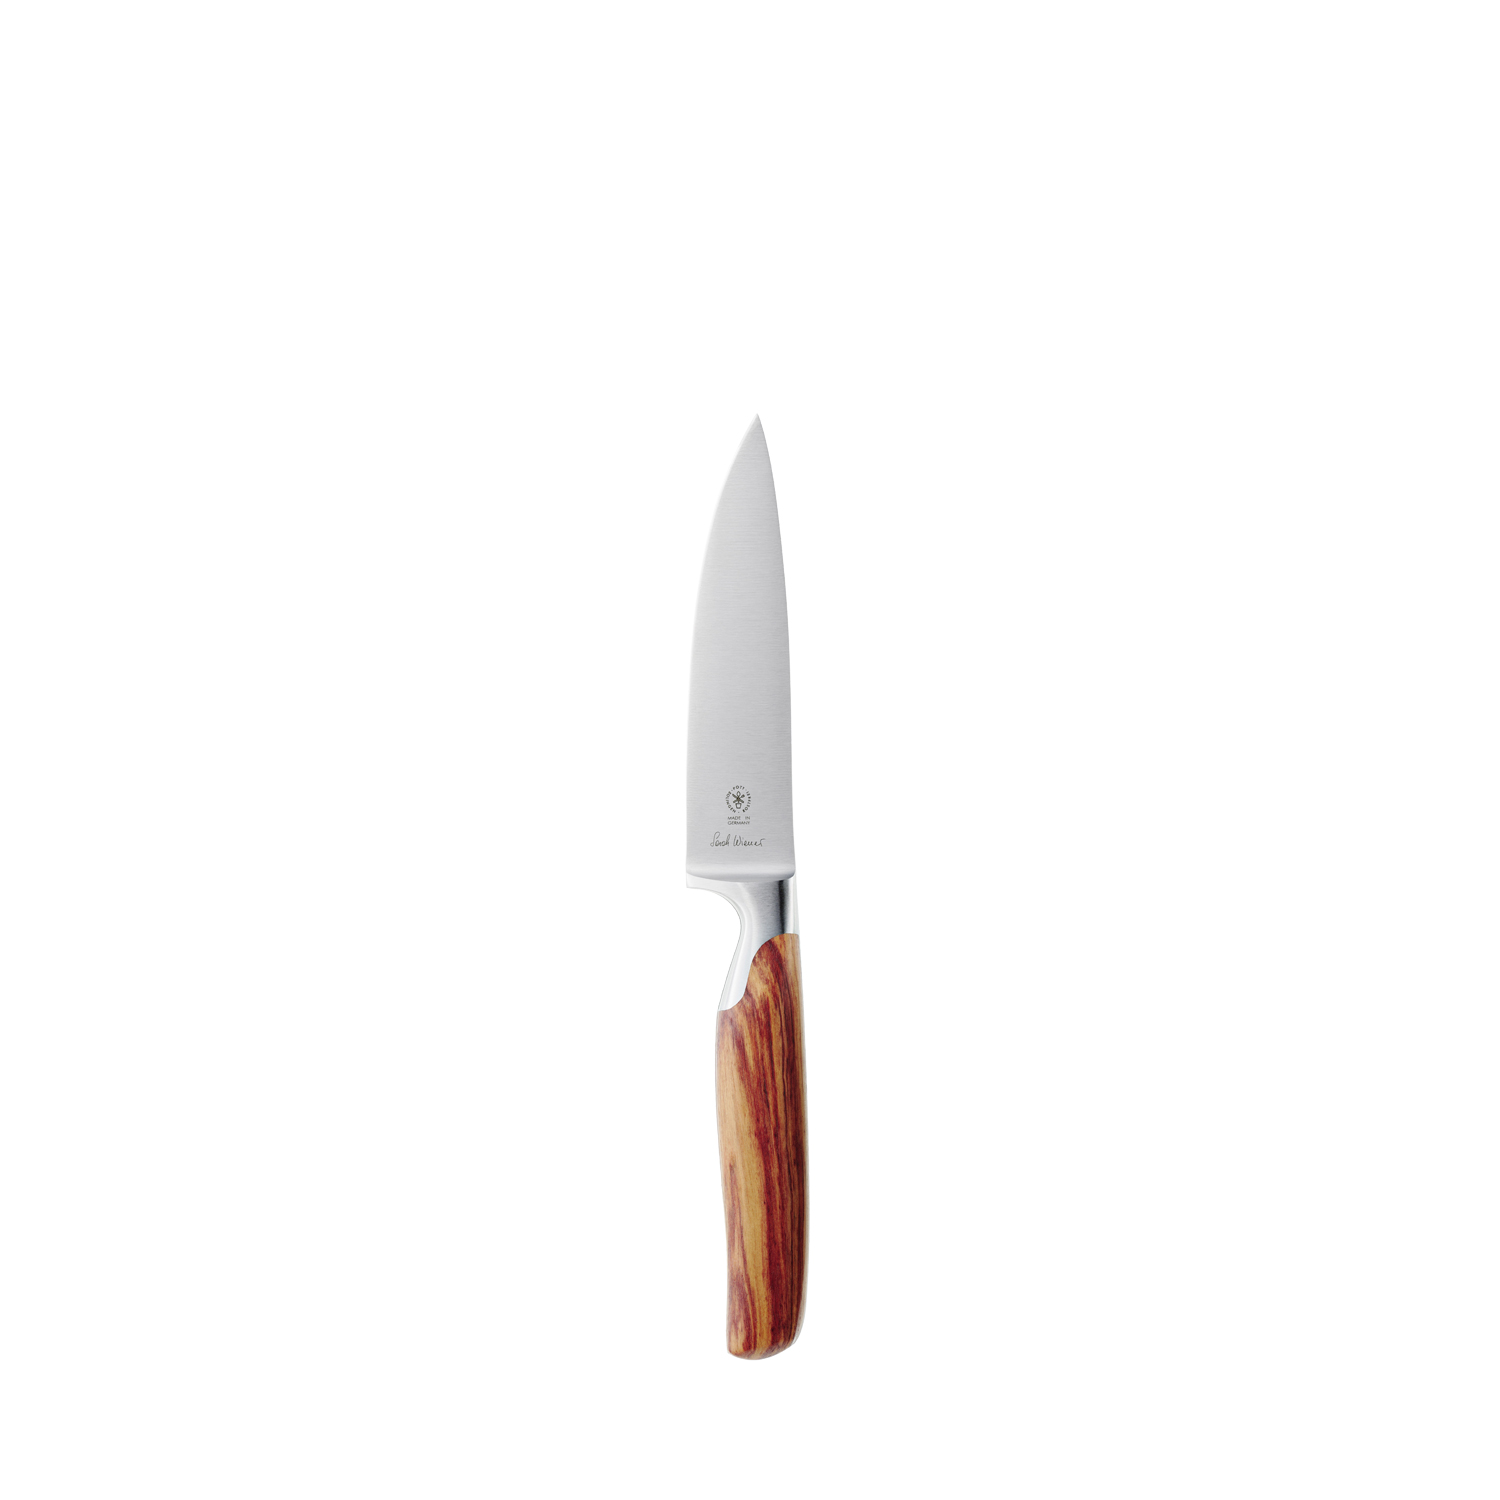 2820 141 Pott Sarah Wiener Messer Knives